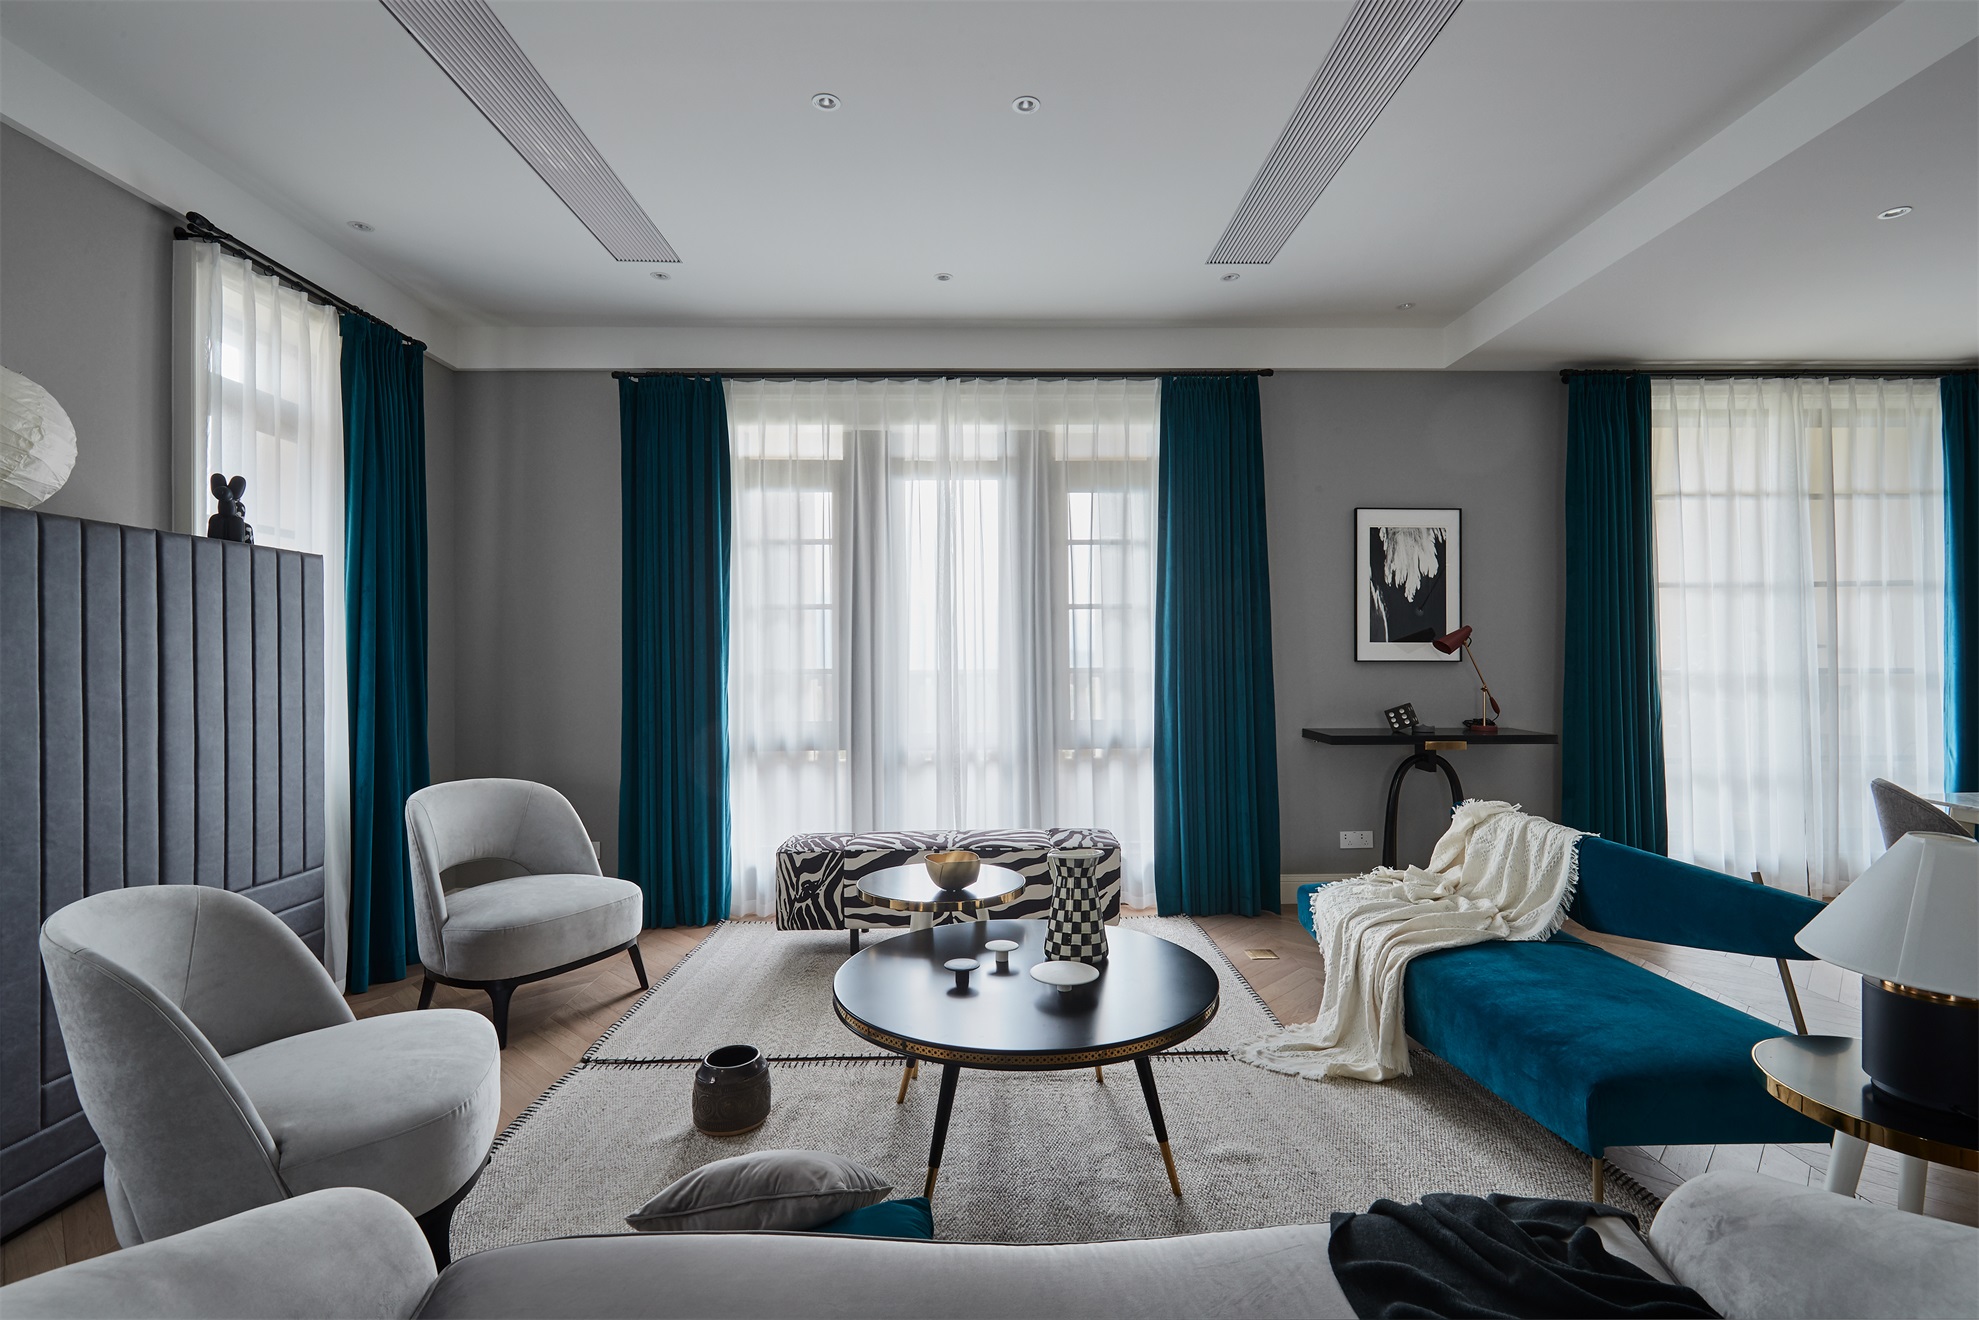 灰色座椅与海蓝色的沙发形成强烈的视觉对比效果,营造出精致的视觉